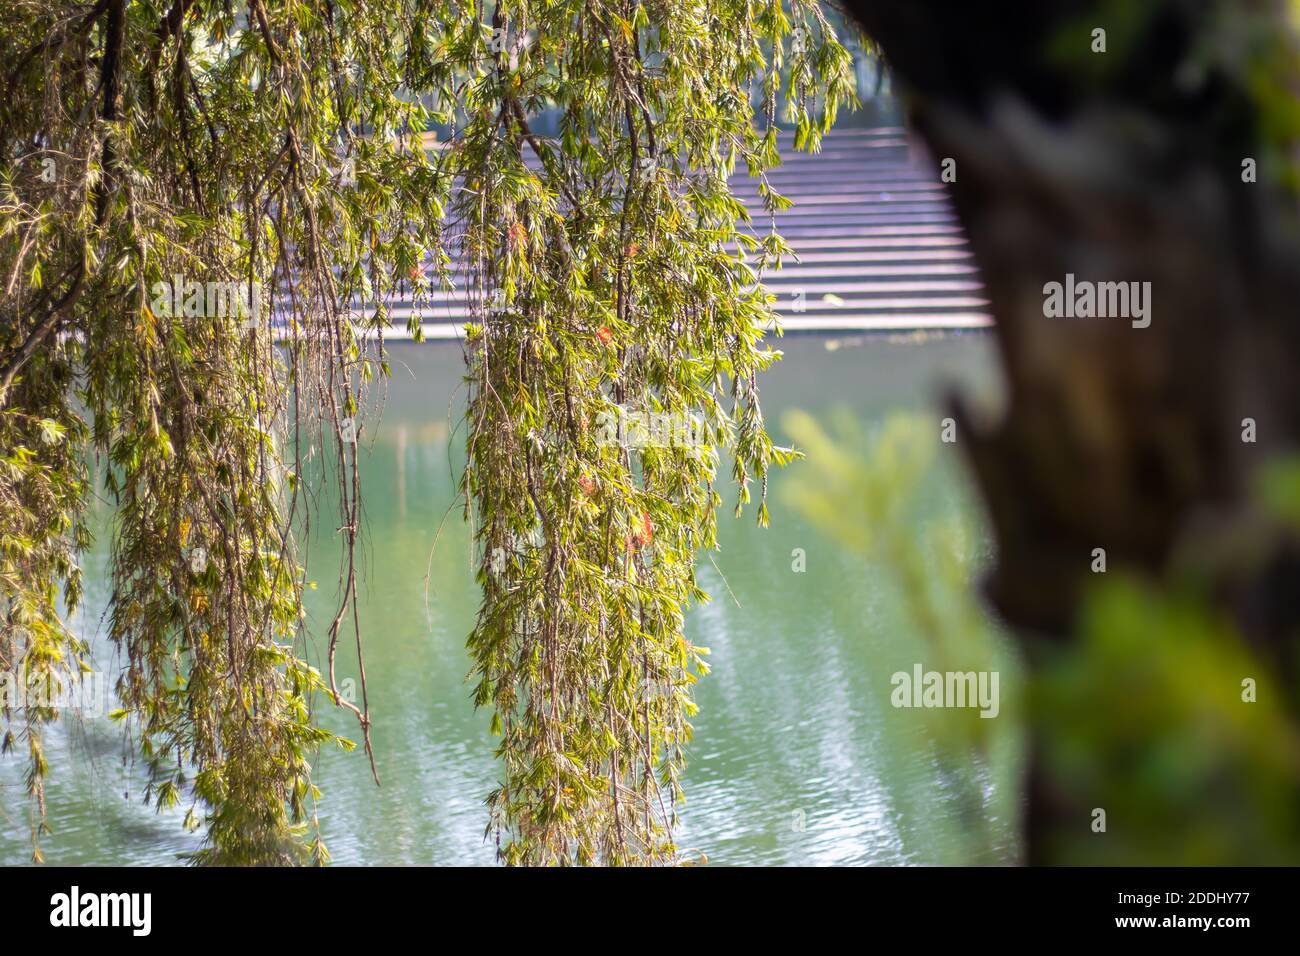 Ramas colgantes de árboles dentro un parque junto a un lago flor roja Fotografía de stock Alamy